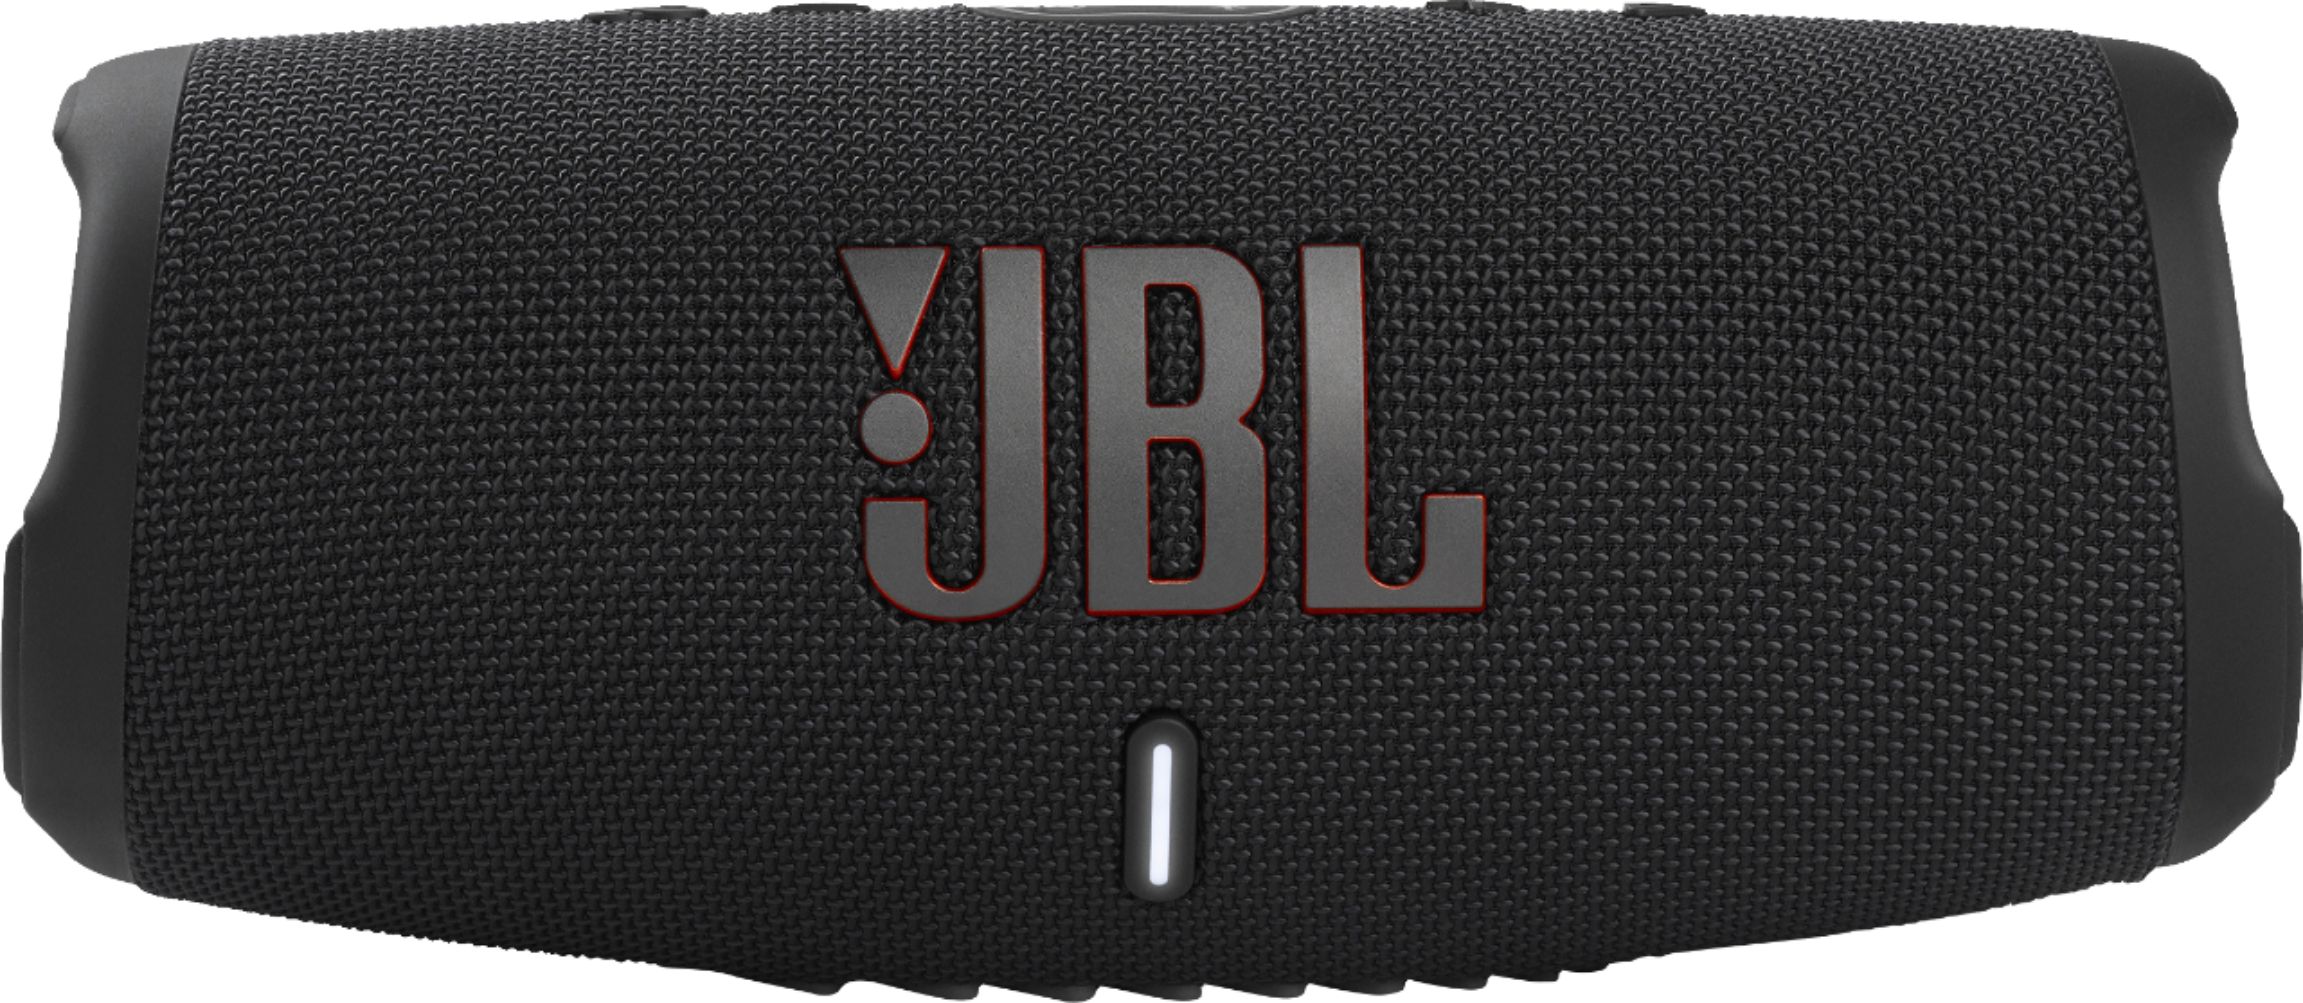 Black JBL Charge 3 Portable Bluetooth Waterproof Speaker Renewed 